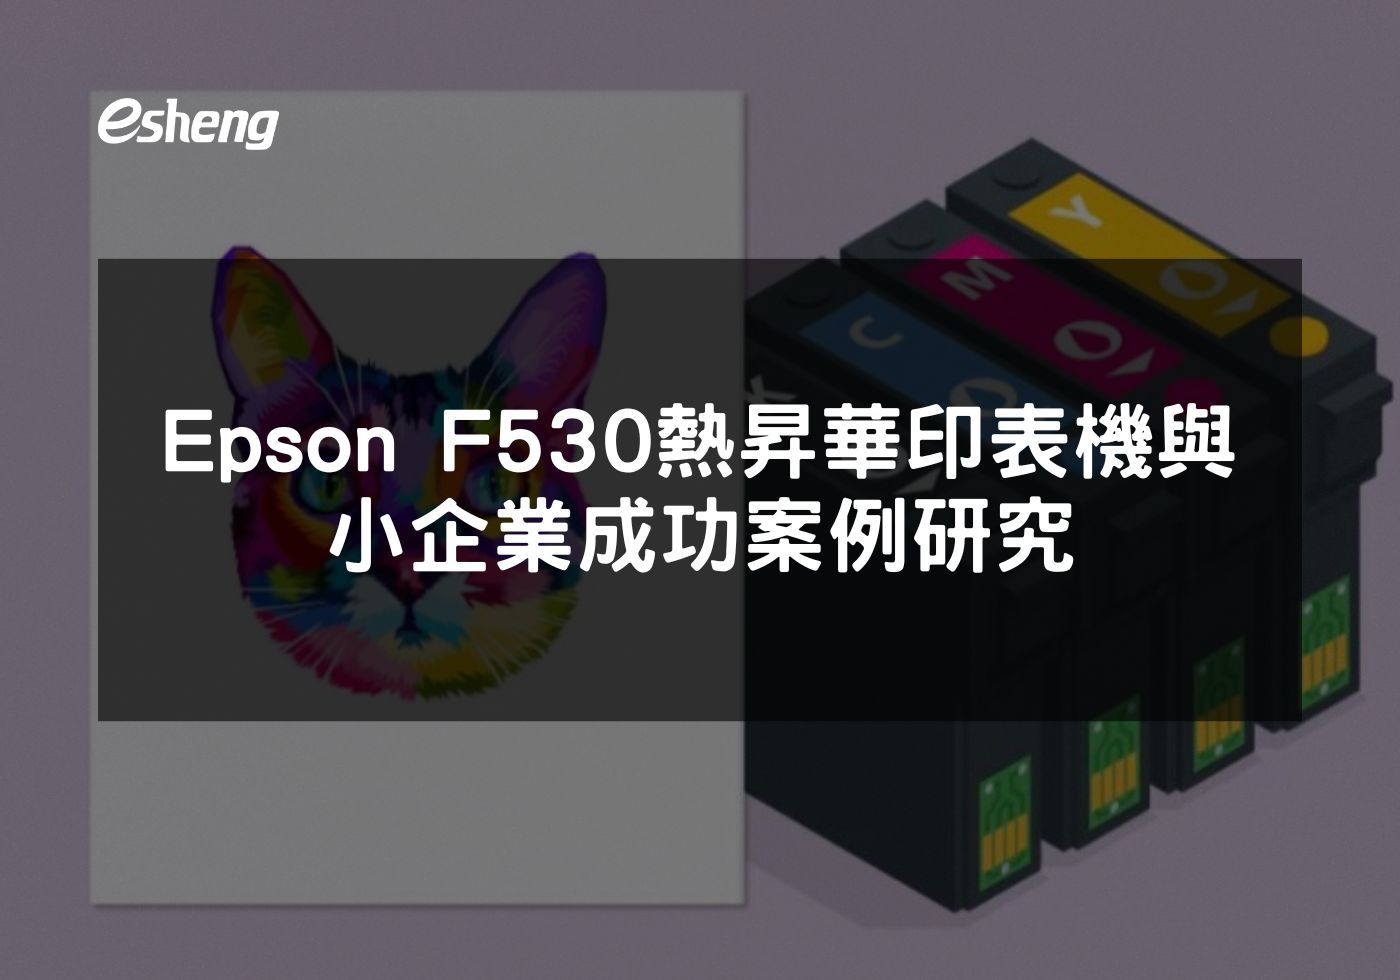 如何透過Epson F530熱昇華印表機提升小企業競爭力